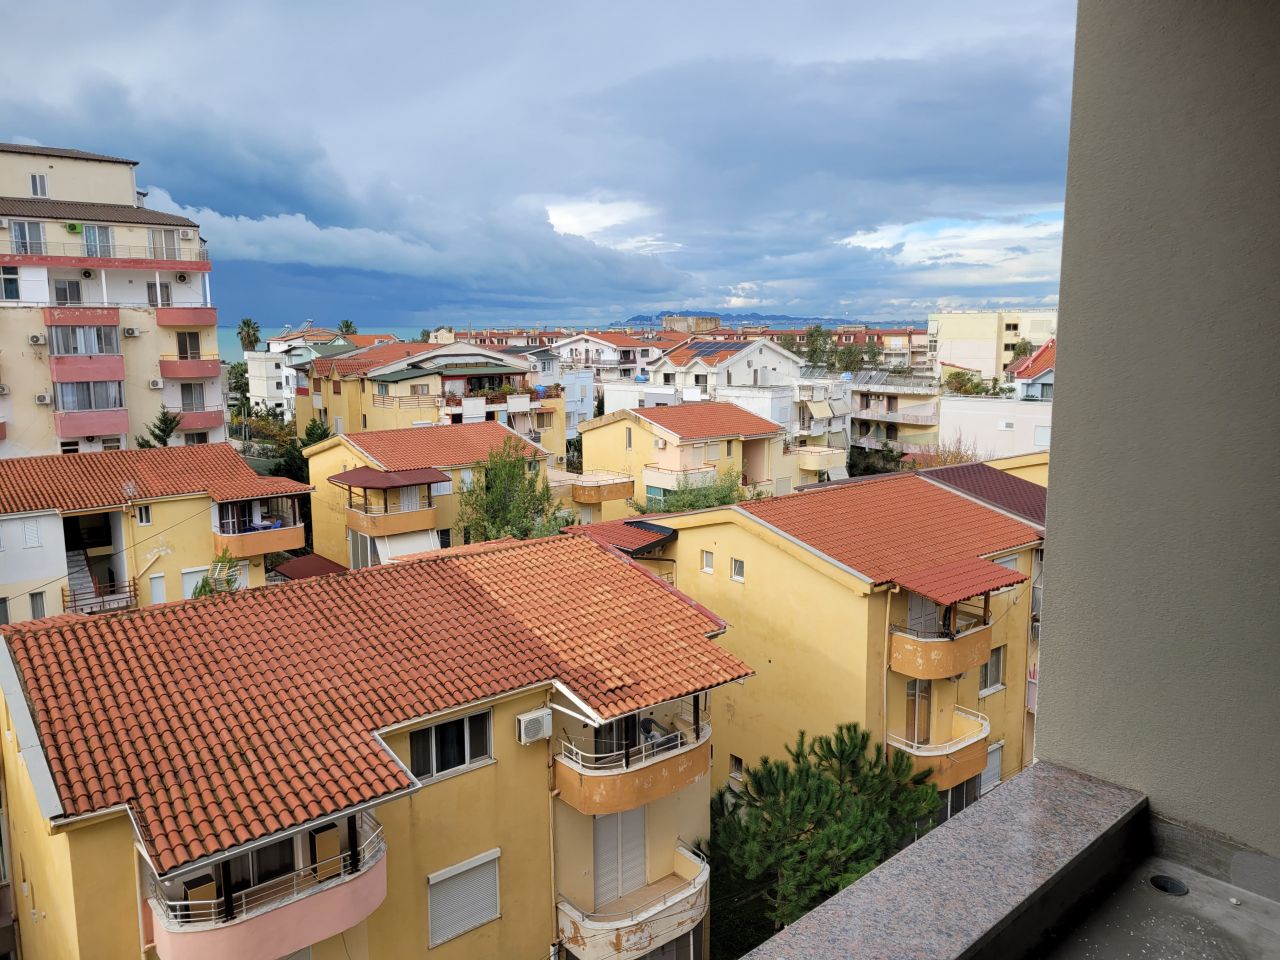 Mieszkanie Z Jedną Sypialnią Na Sprzedaż W Golem Durres W Albanii, Położone W Spokojnej Okolicy, Niedaleko Plaży